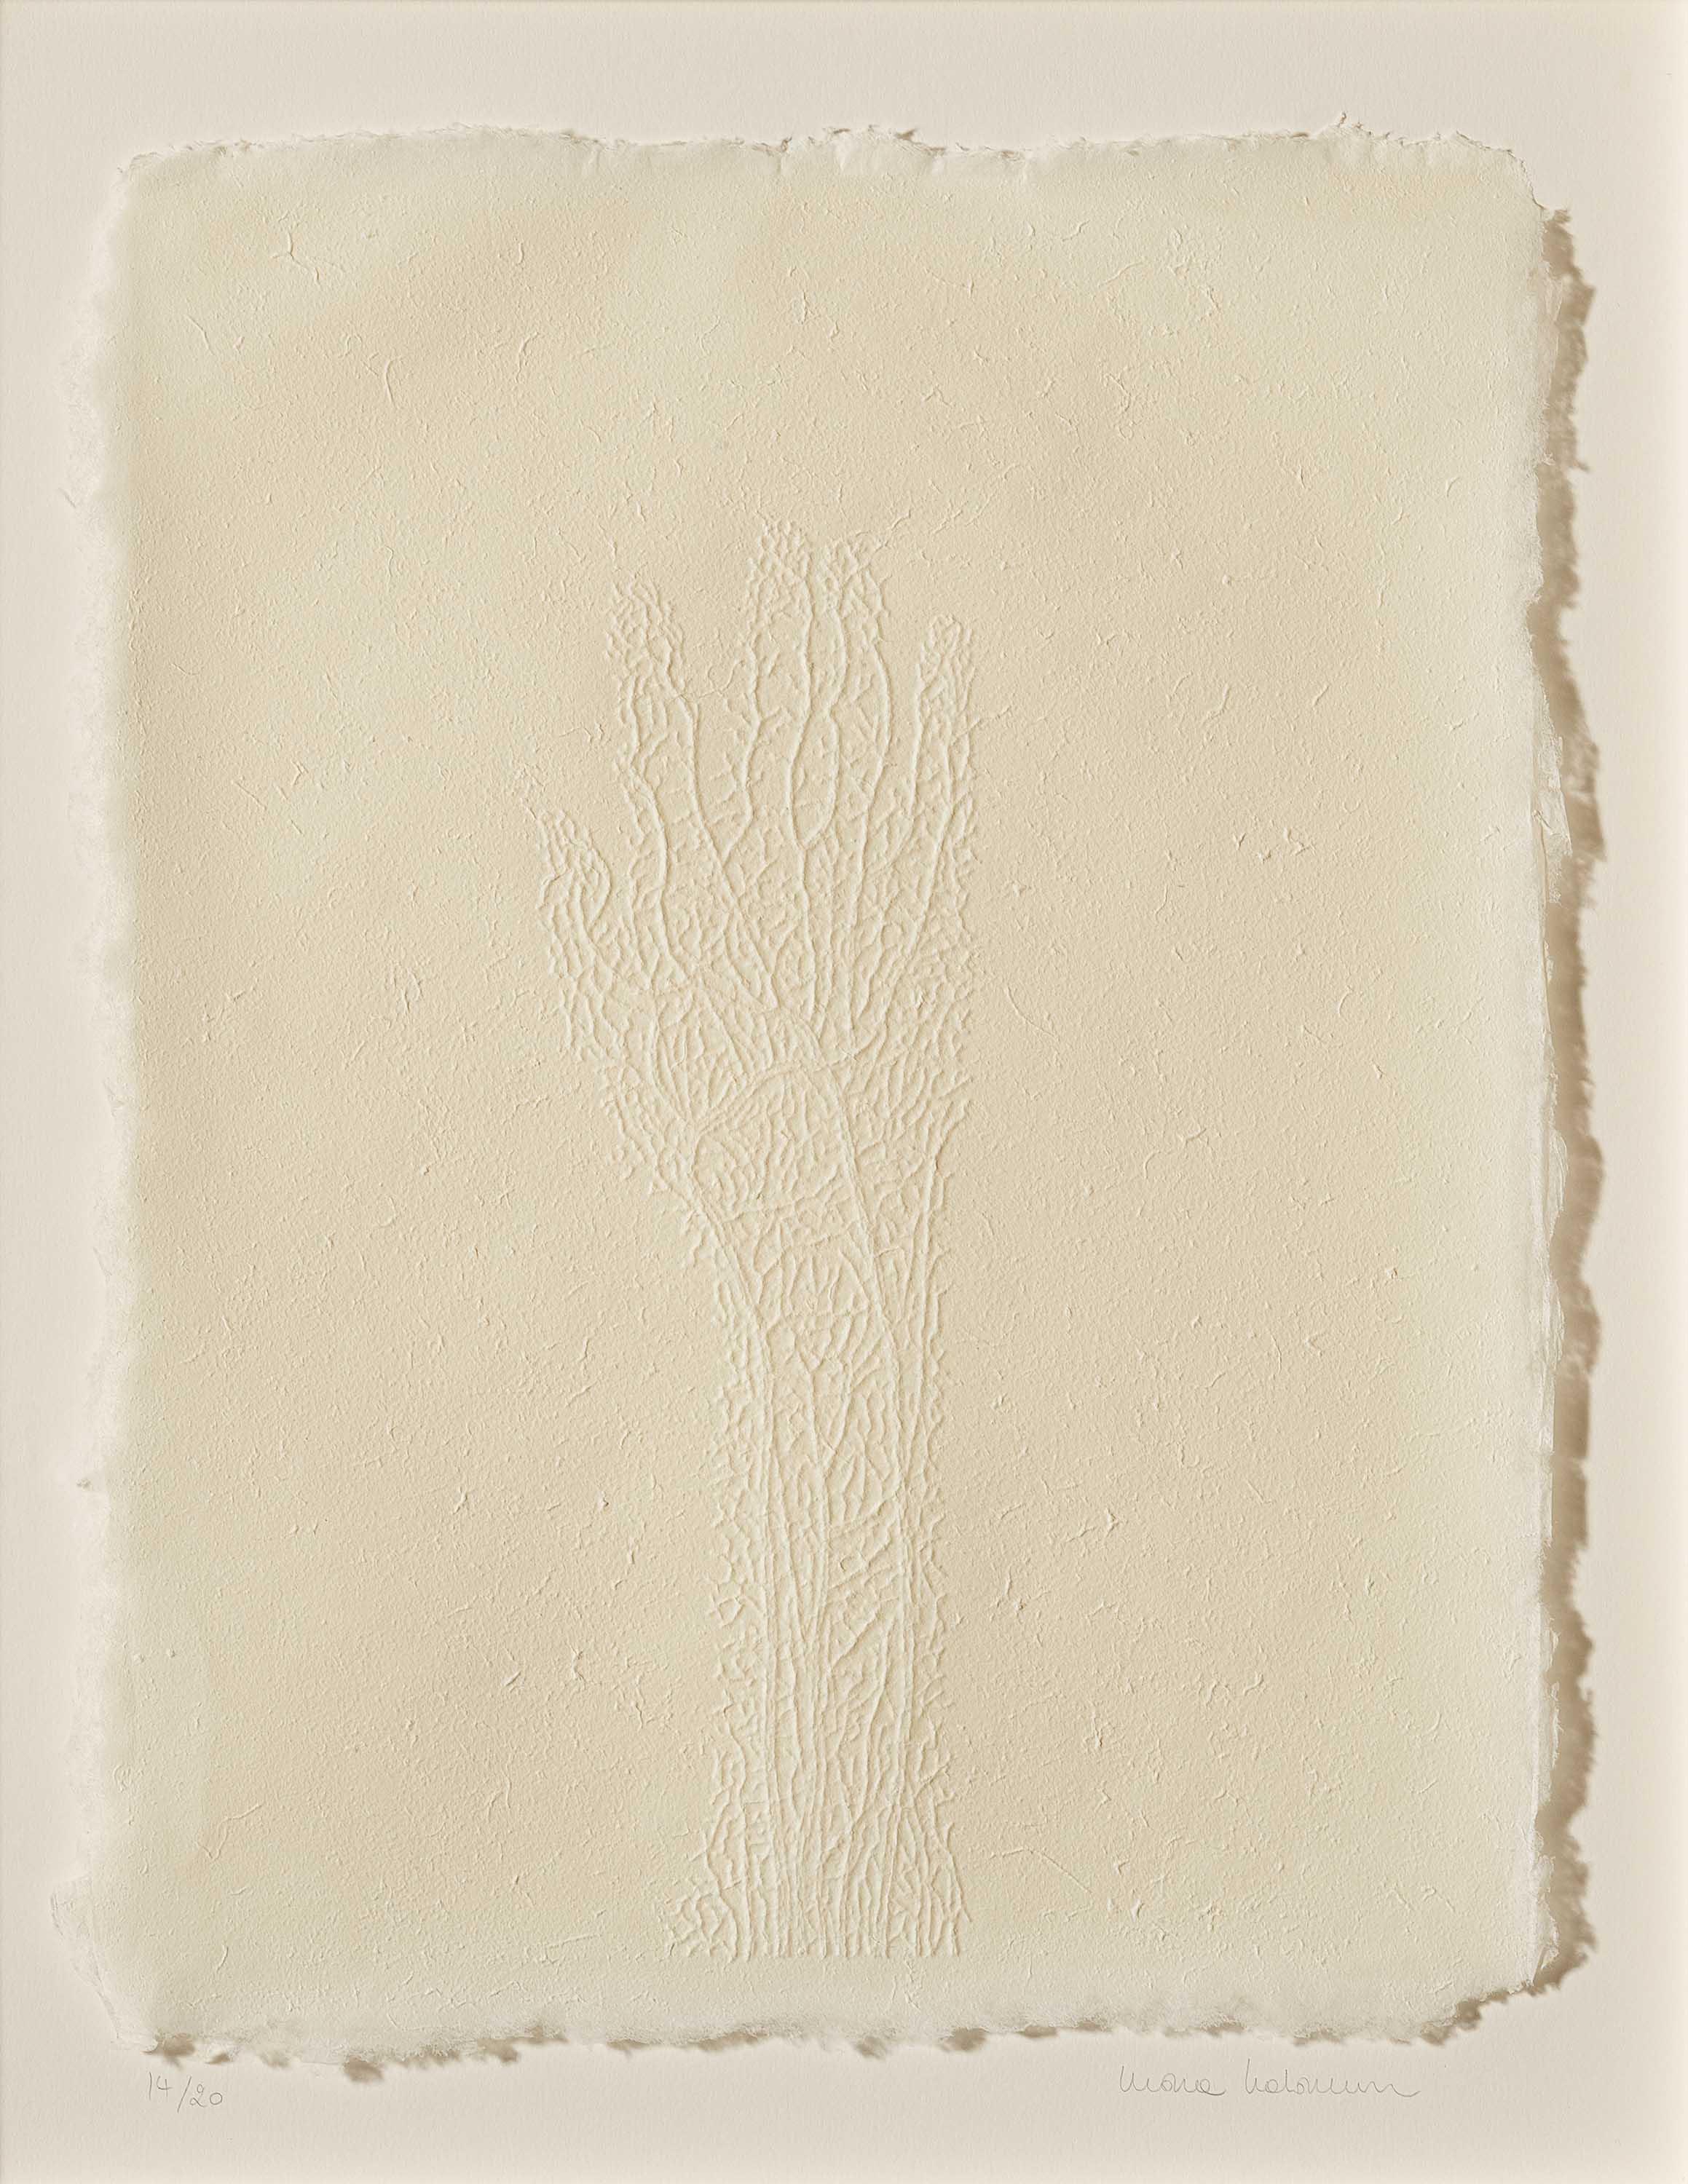 Mona Hatoum - Hand made paper, 73798-1, Van Ham Kunstauktionen